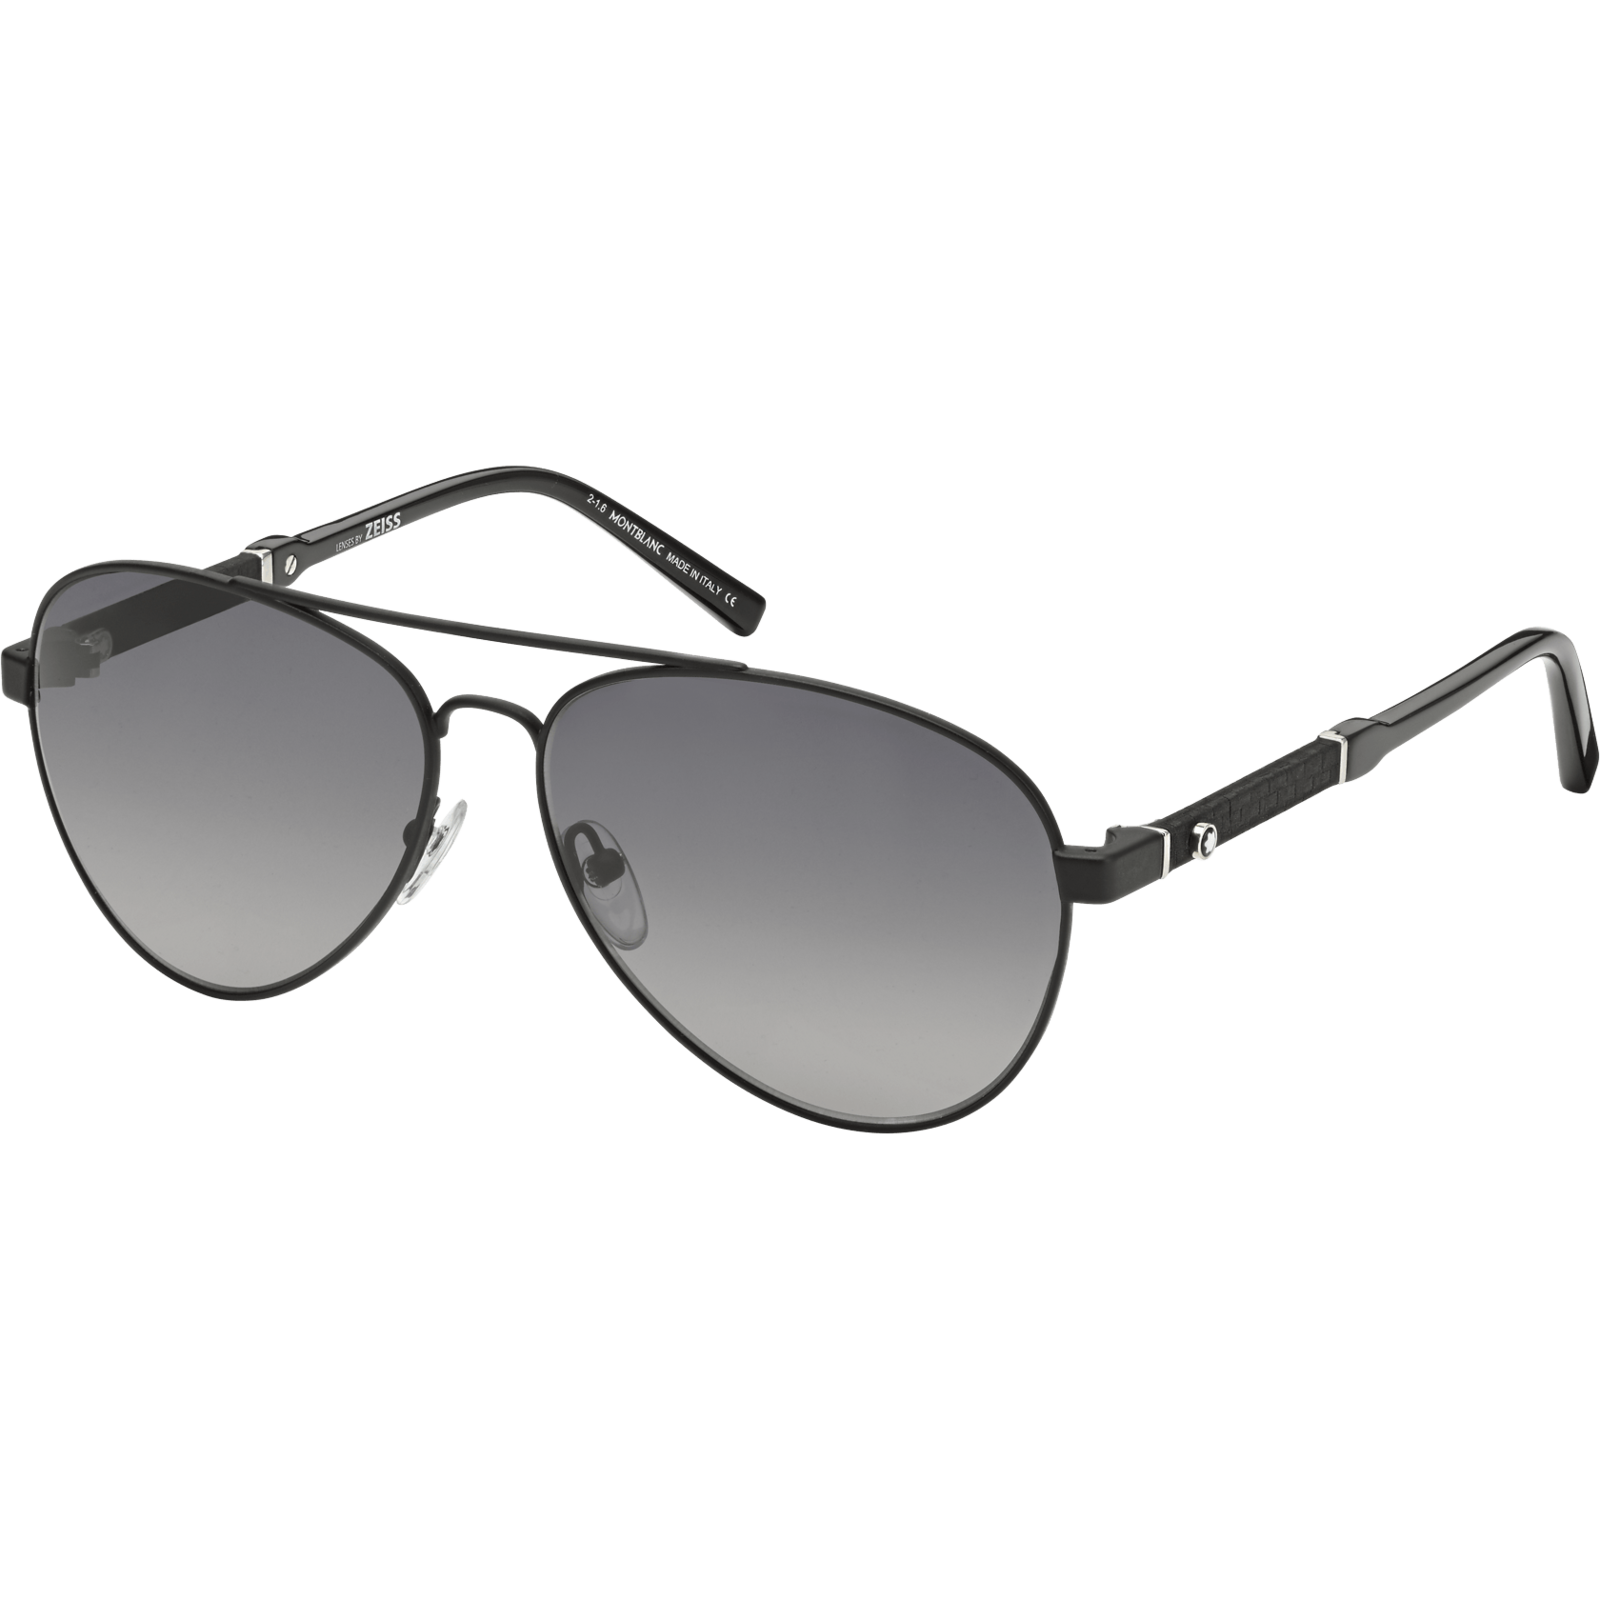 Amazon.com Montblanc Sunglasses Eyewear Online shopping - Thug Life png ...